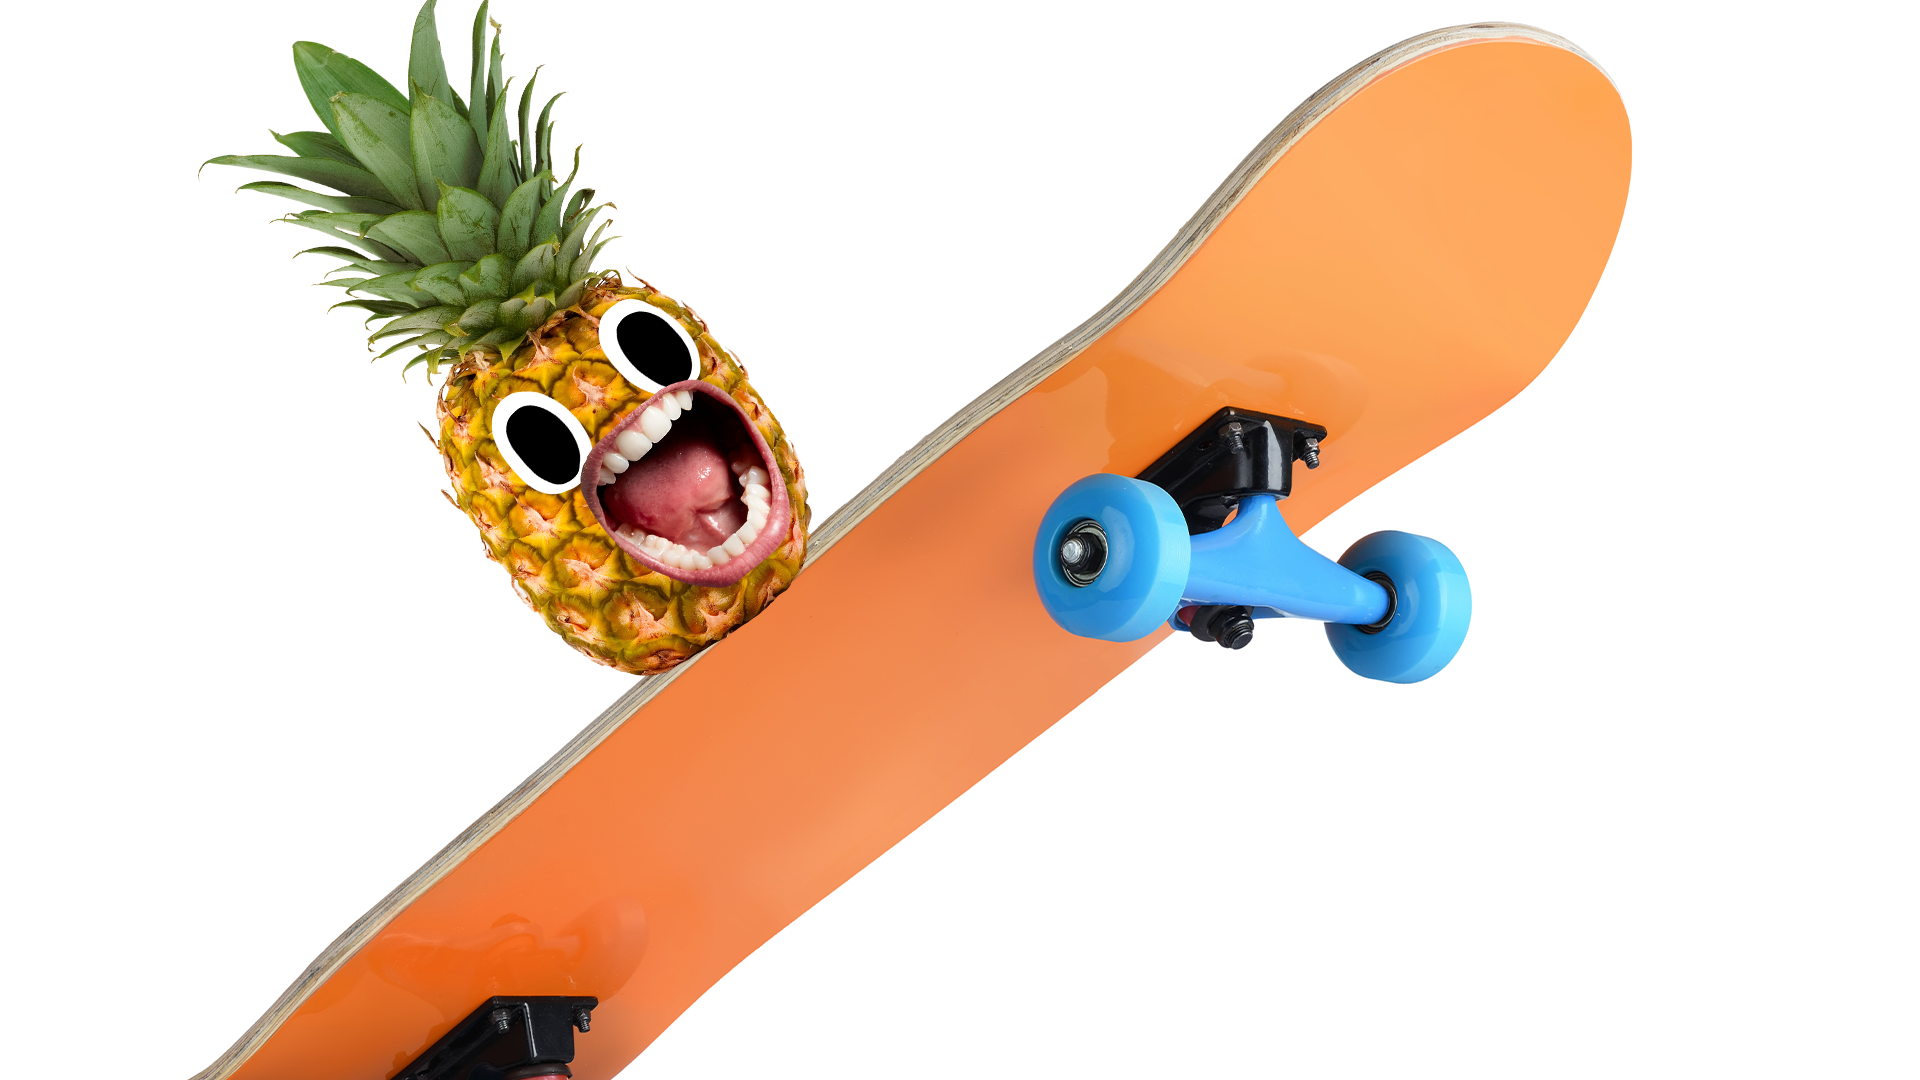 Screaming pineapple on skateboard on white background